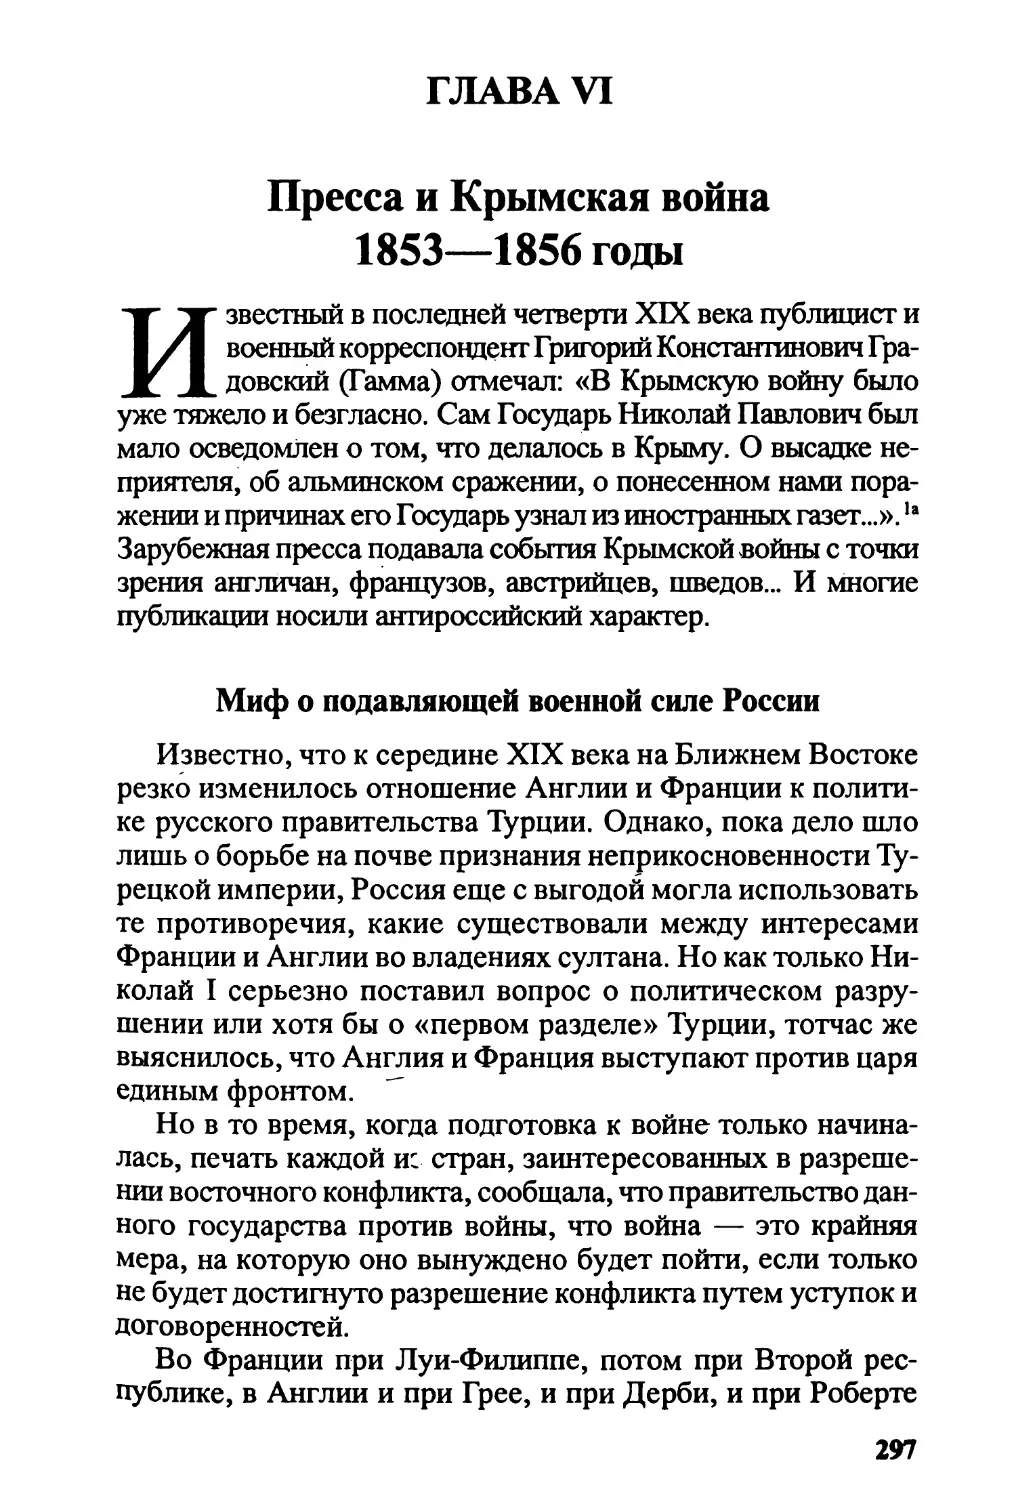 Глава VI. Пресса и Крымская война. 1853—1856 годы